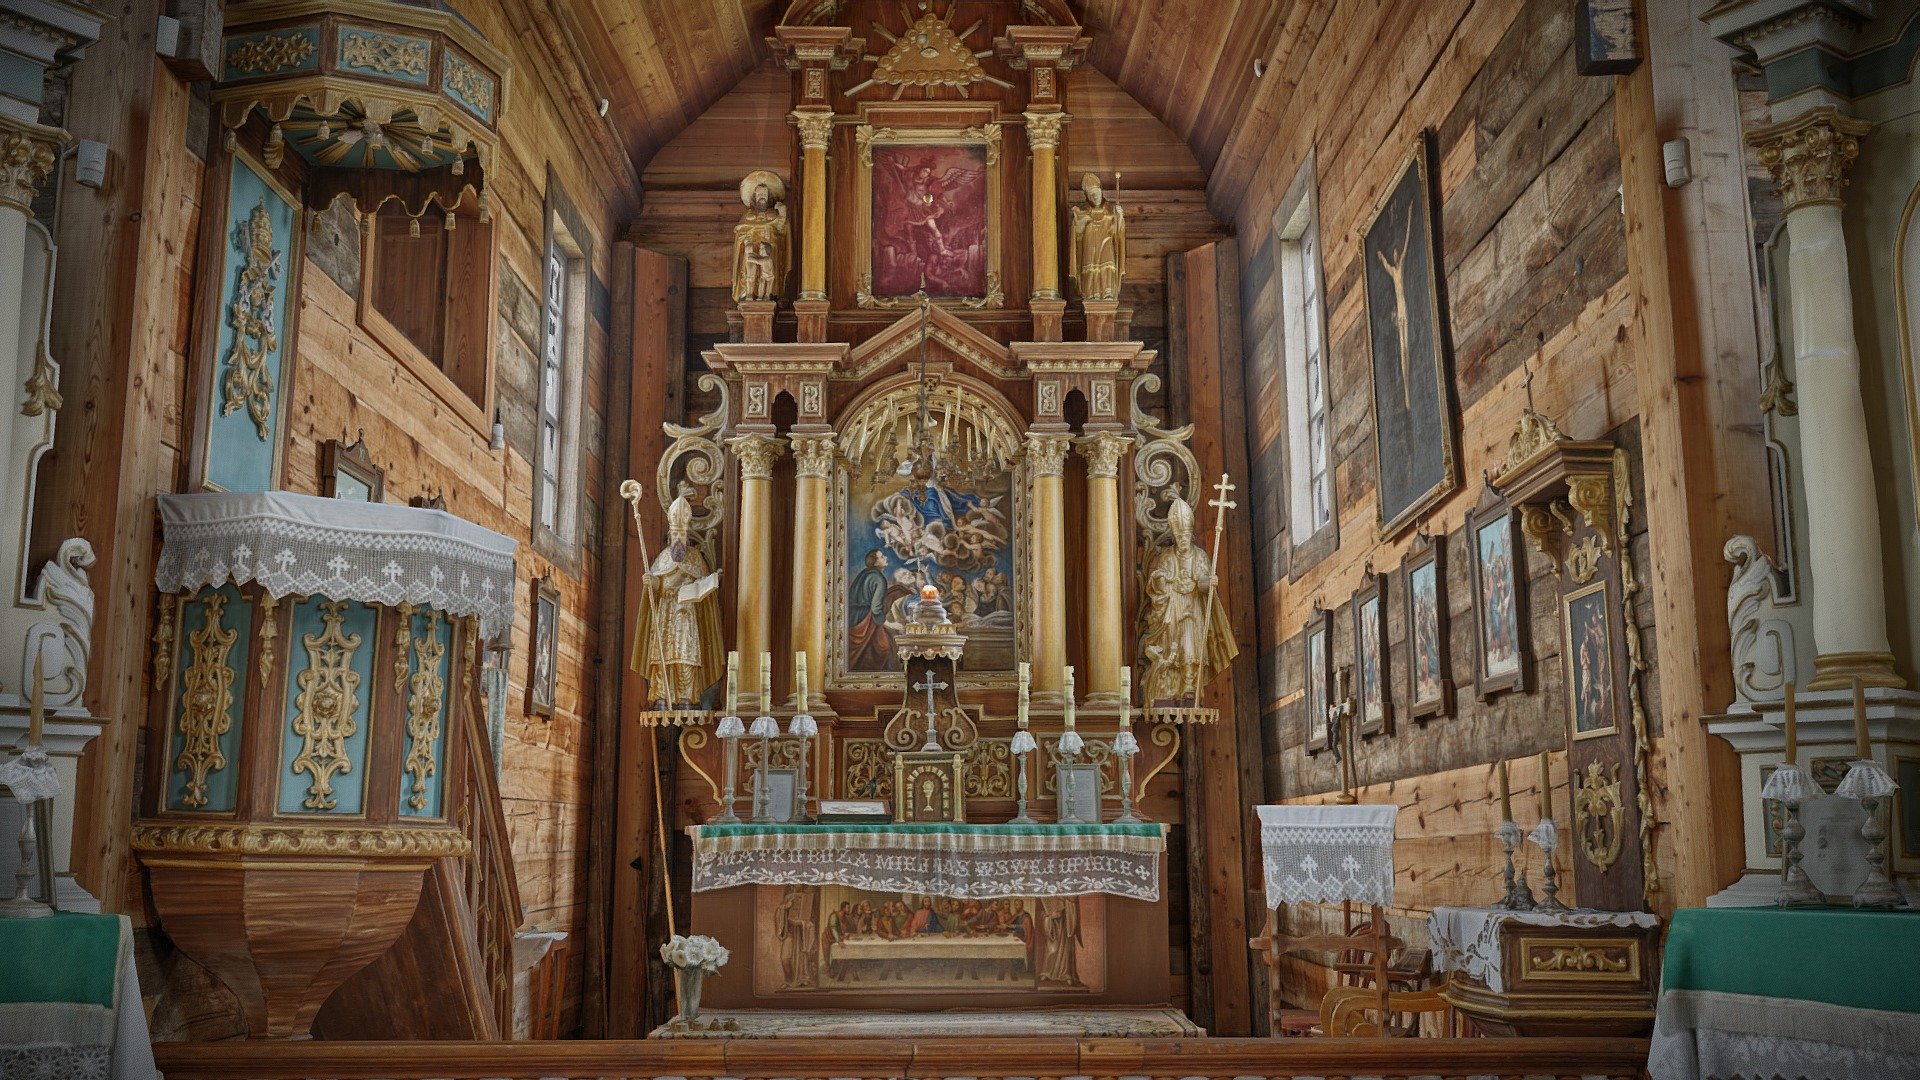 Ten drewniany kościół to najstarszy oryginalny obiekt w lubelskim skansenie. Wybudowano go około 1686 r. Posiada cztery wnętrza: kwadratową nawę, prostokątne węższe prezbiterium, przedsionek i zakrystię. Jest najstarszym zachowanym drewnianym kościołem parafialnym na Lubelszczyźnie, z unikalną w drewnianej architekturze sakralnej lożą kolatorską nad zakrystią. Pierwotnie funkcjonował w Matczynie k. Bełżyc jako wiejski parafialny. Natomiast w sektorze Miasteczko to ekspozycja kościoła parafii tzw. II klasy, wg ówczesnej administracji kościelnej, obejmującej kilka, kilkanaście pobliskich wiosek. Wyposażenie wnętrza przywołuje przełom lat 20. i 30. XX w., z dominującym wystrojem barokowym i późnobarokowym, kształtowanym w okresie od poł. XVIII do poł. XIX w. Obecnie w kościele odprawiane są również okolicznościowo Msze Święte, udzielane sakramenty ślubu i chrztu 3d model